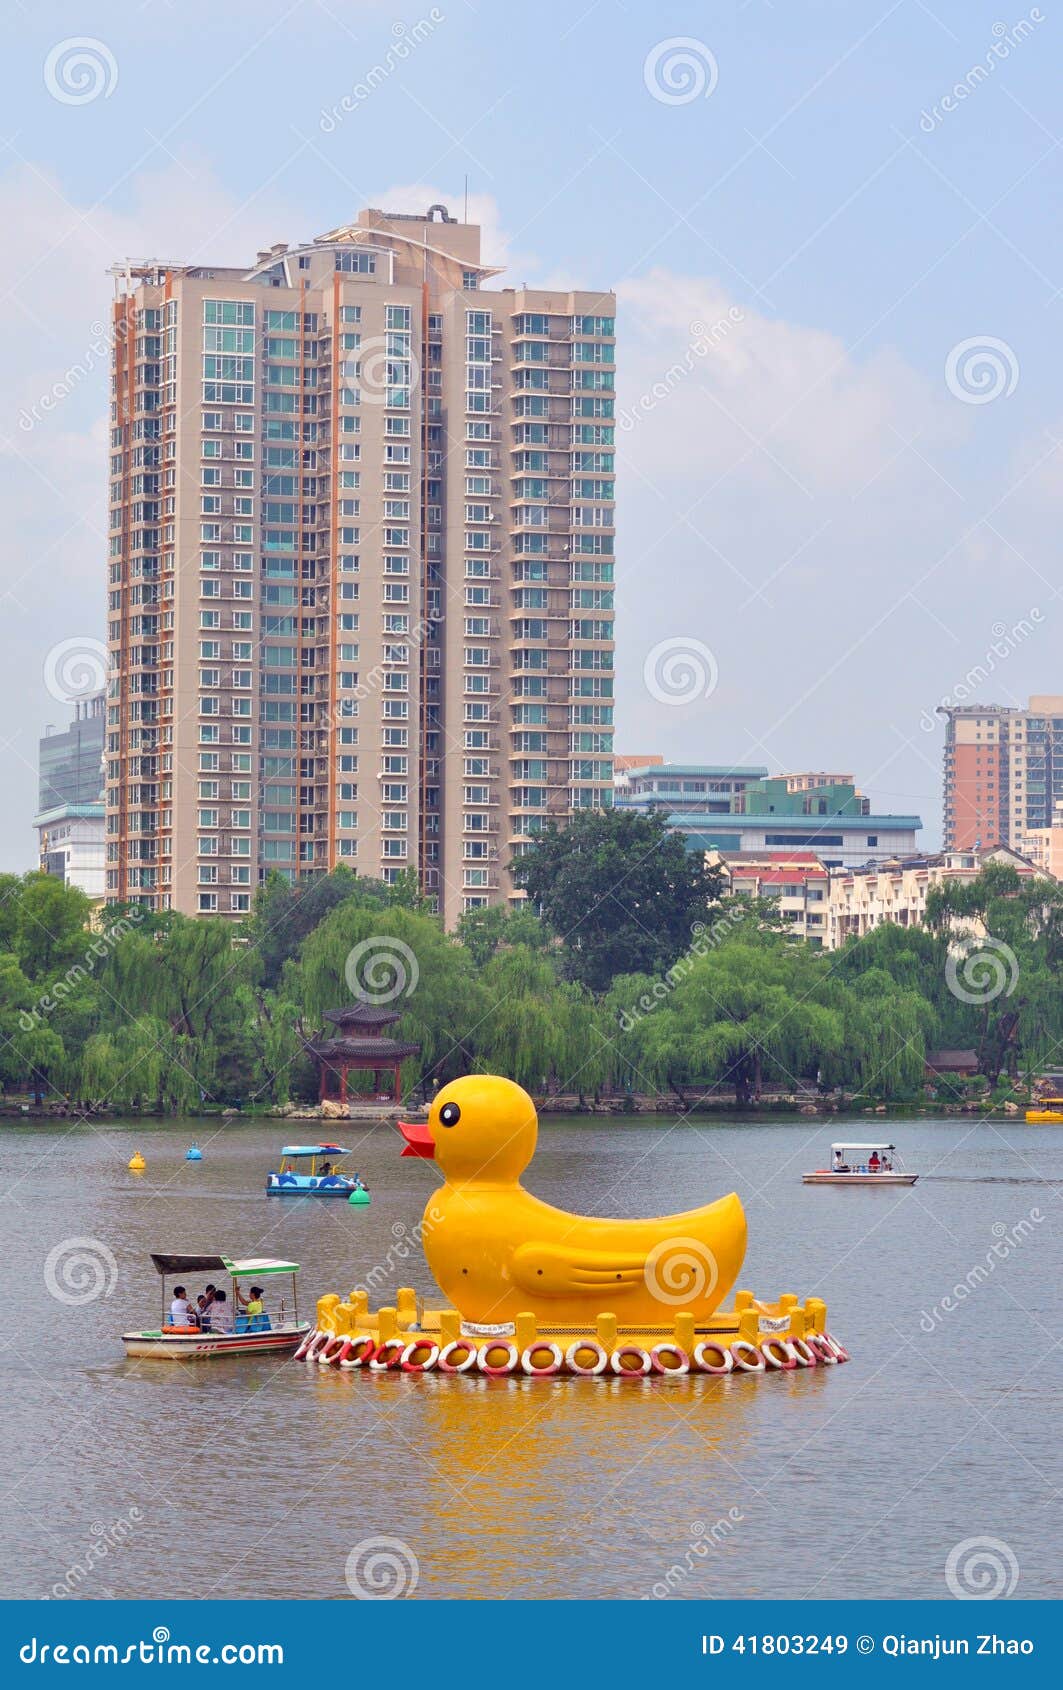 yellow ducks in black bamboo park in beijing editorial